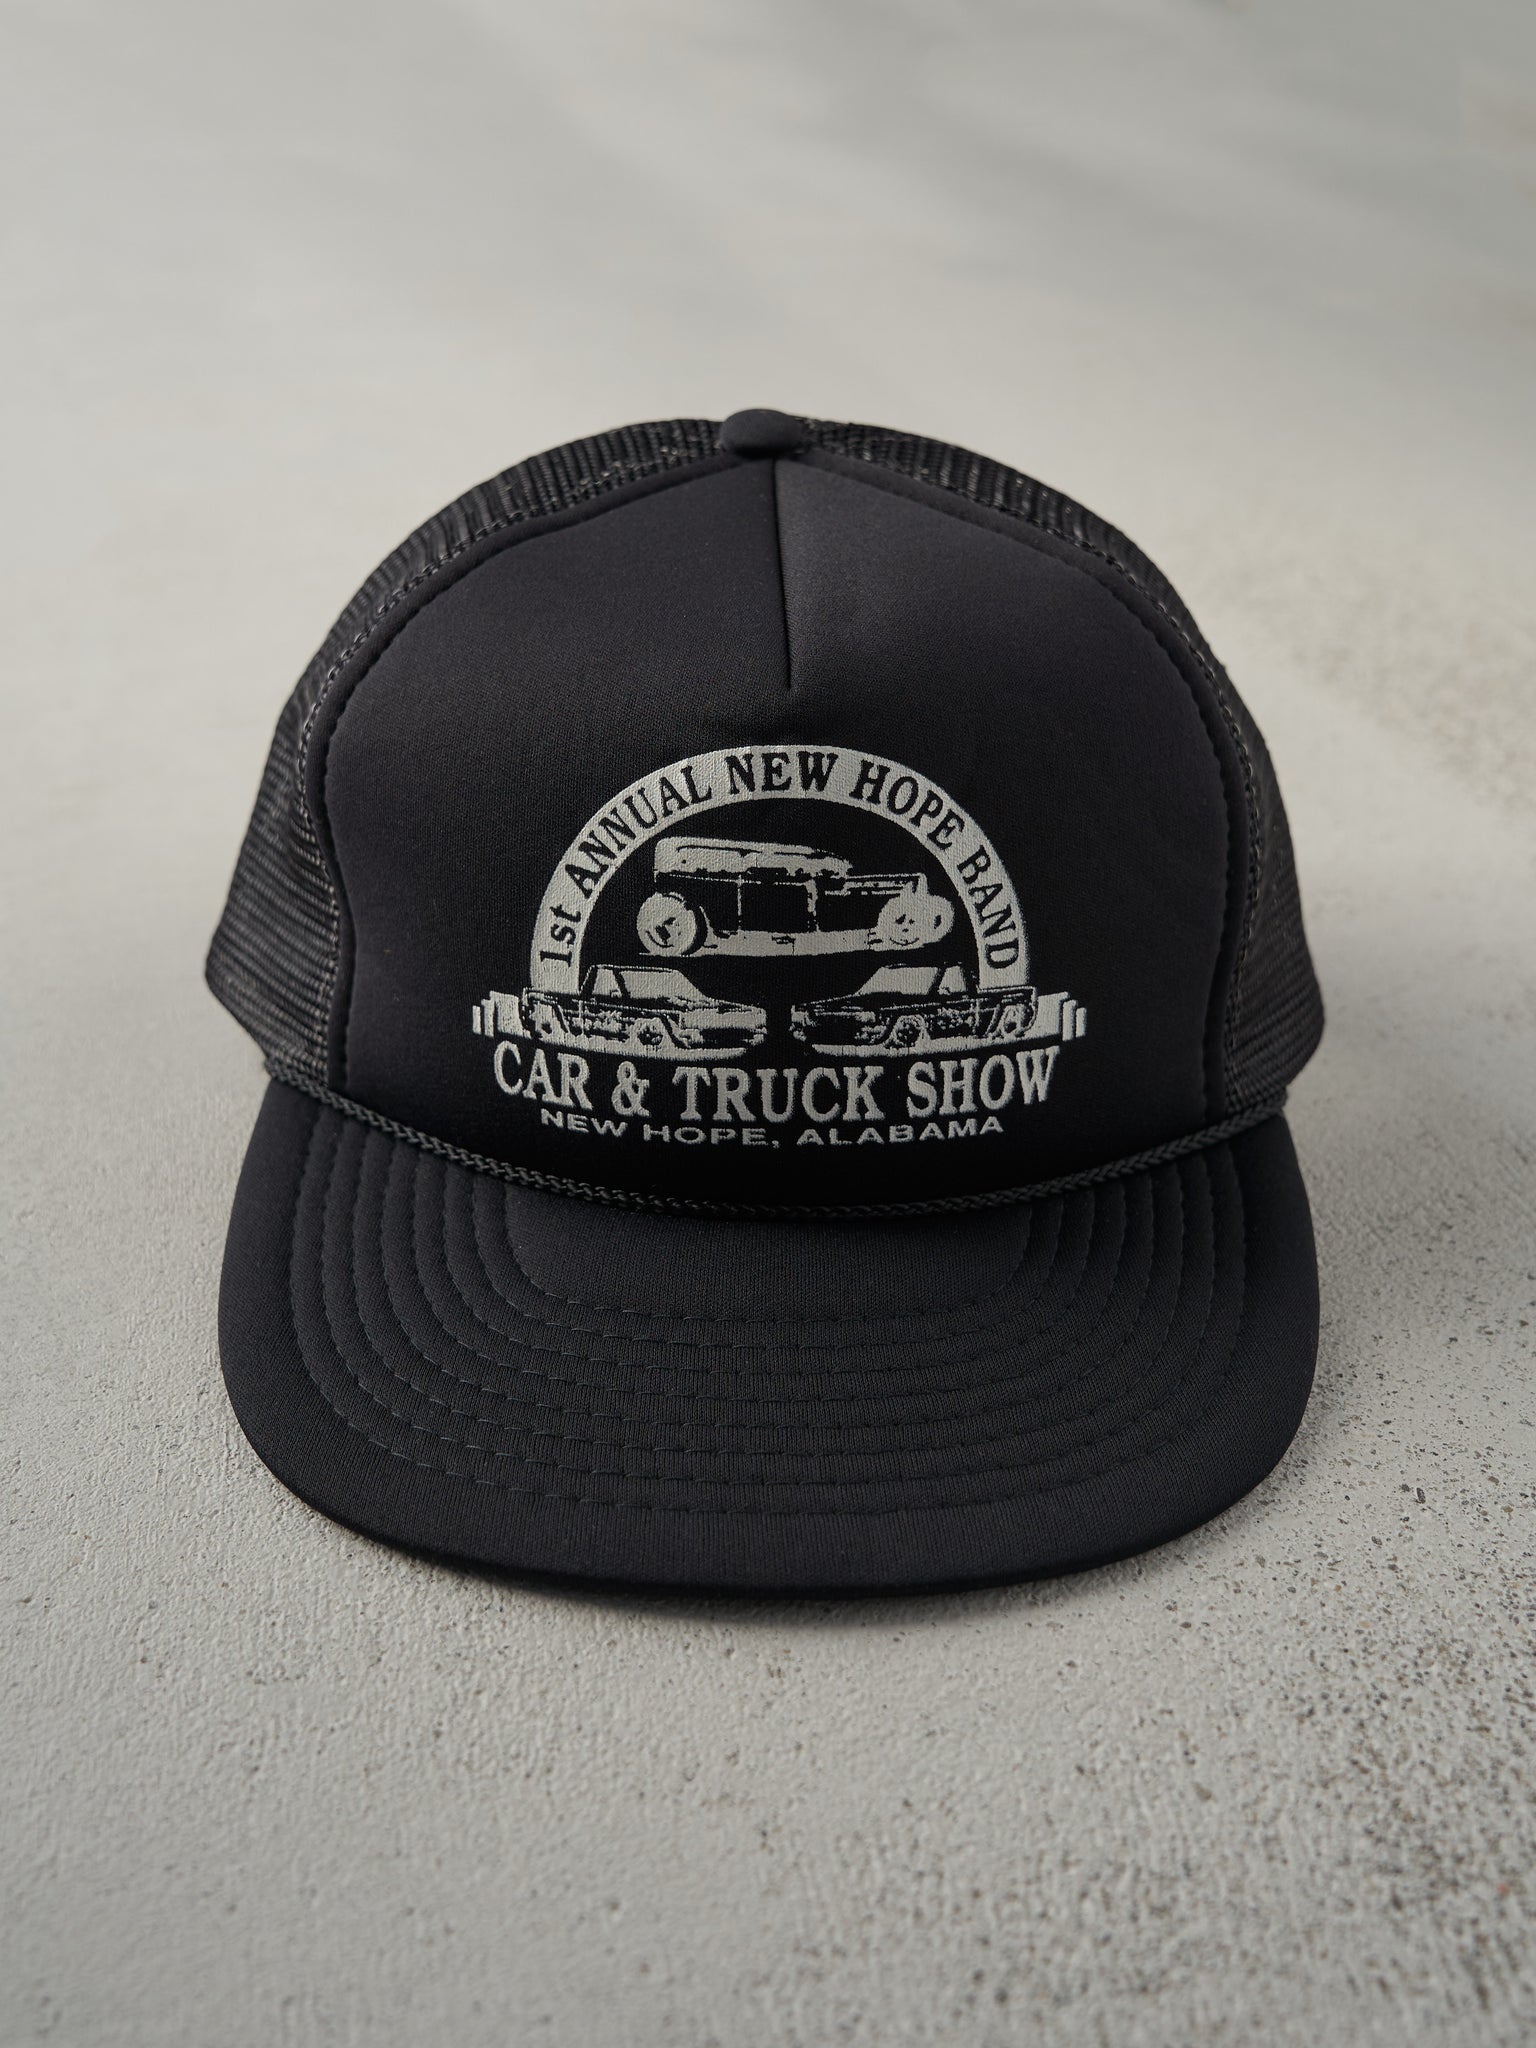 Vintage 90s Black Foam Trucker Hat